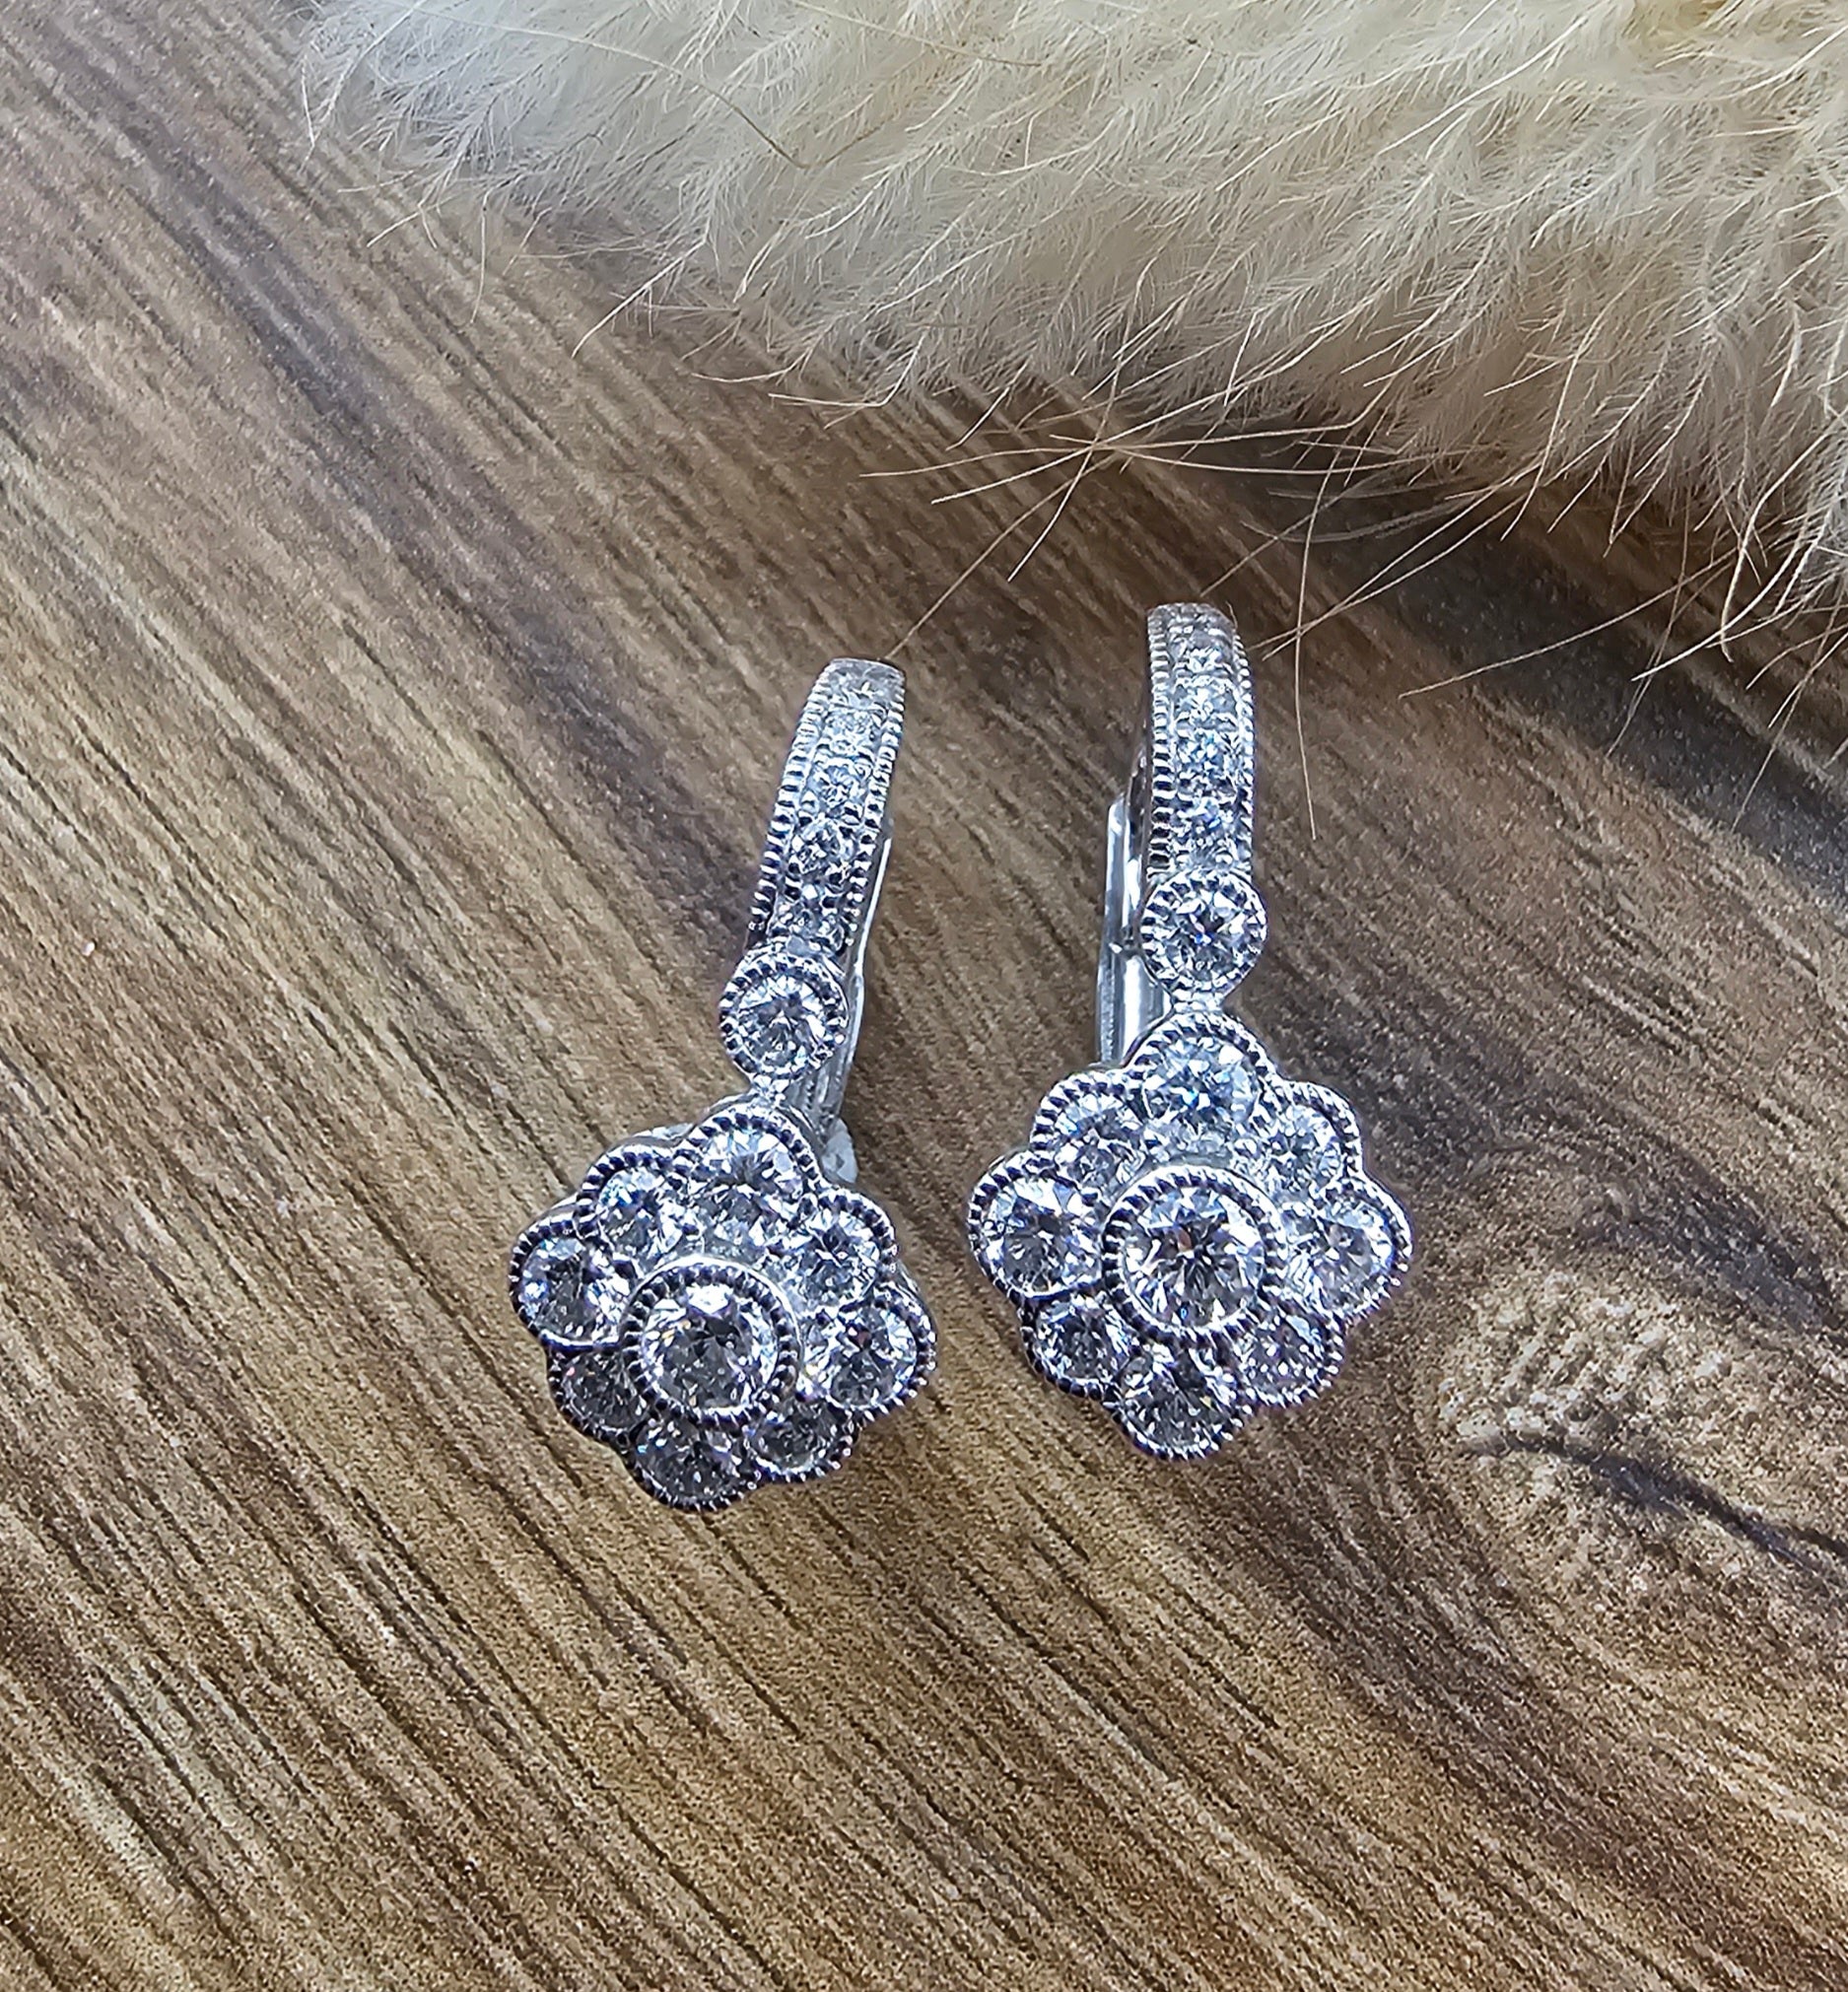 Vintage diamond hoop earrings